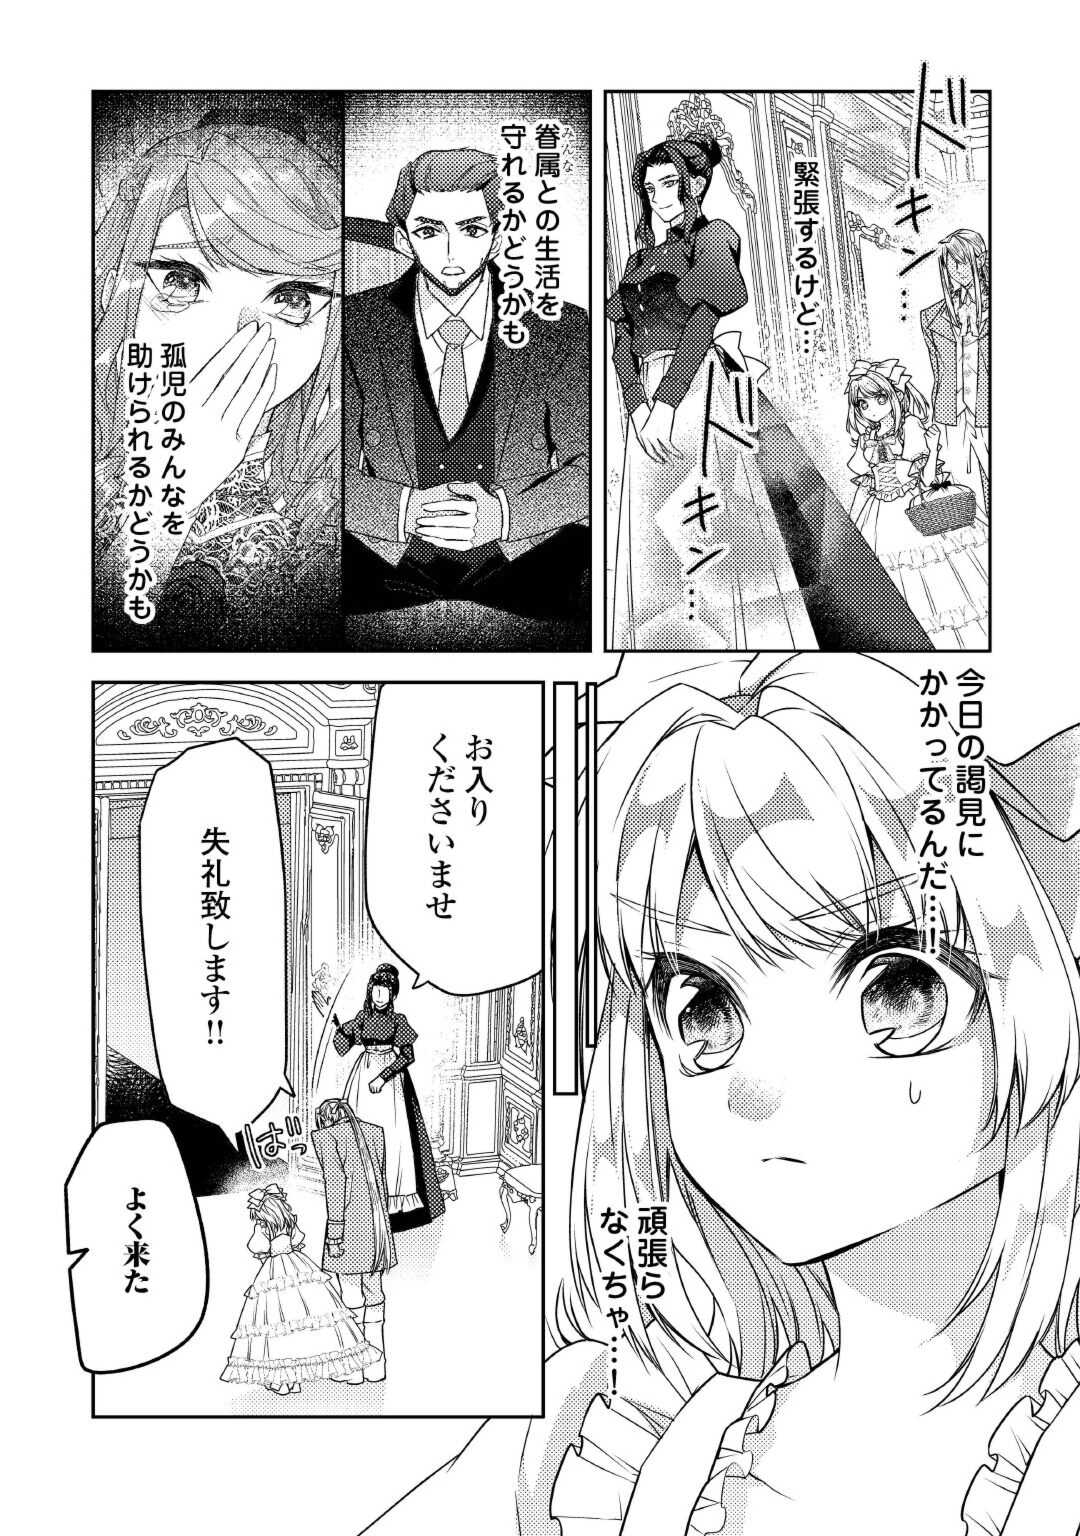 Toaru Chisana Mura No Chi Tona Tanya Ya San - Chapter 19 - Page 3